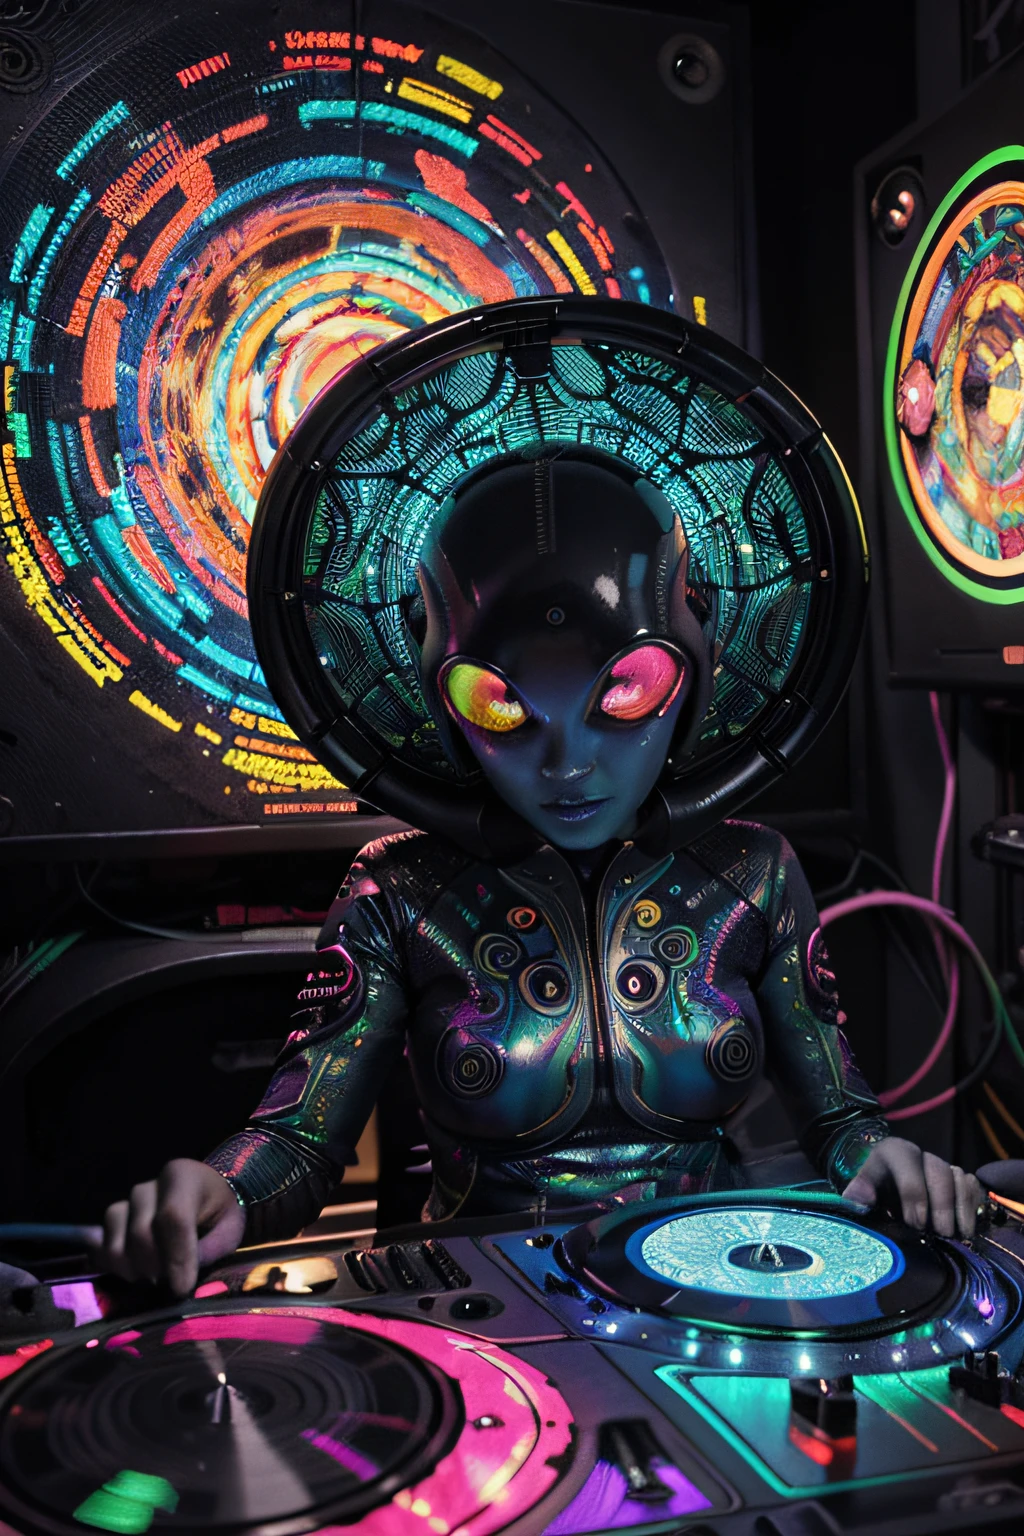 Papel de parede Alien DJ Psy Trance, ciborgue , Estímulo à Arte, cores vibrantes, Criatura alienígena detalhada, Padrões psicodélicos giratórios, luzes de neon, atmosfera estranha, Estilo de arte digital, Resolução 8k